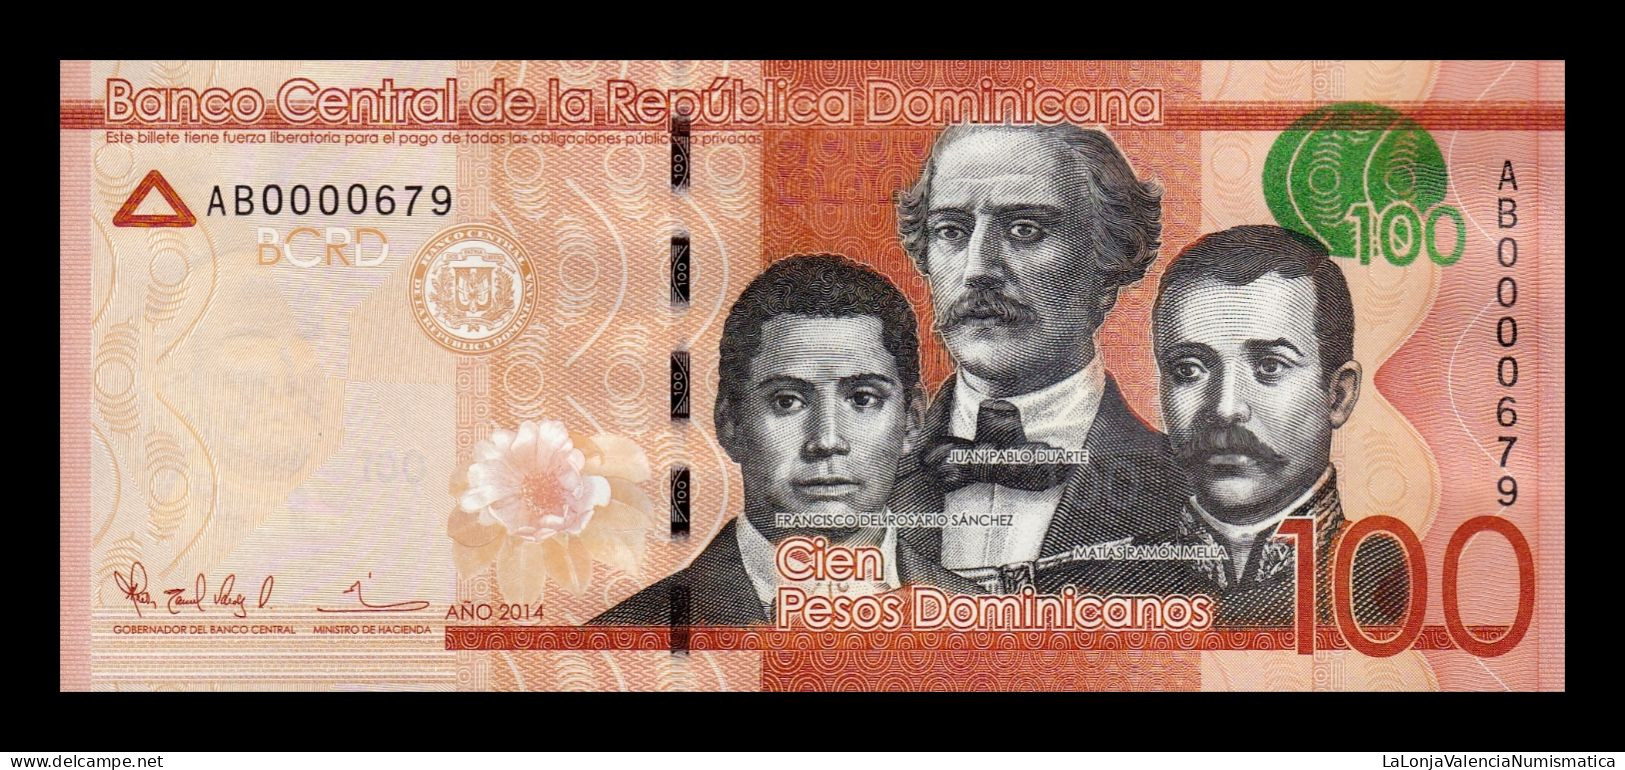 República Dominicana 100 Pesos Dominicanos 2014 Pick 190a Low Serial 661 Sc Unc - Dominicaanse Republiek